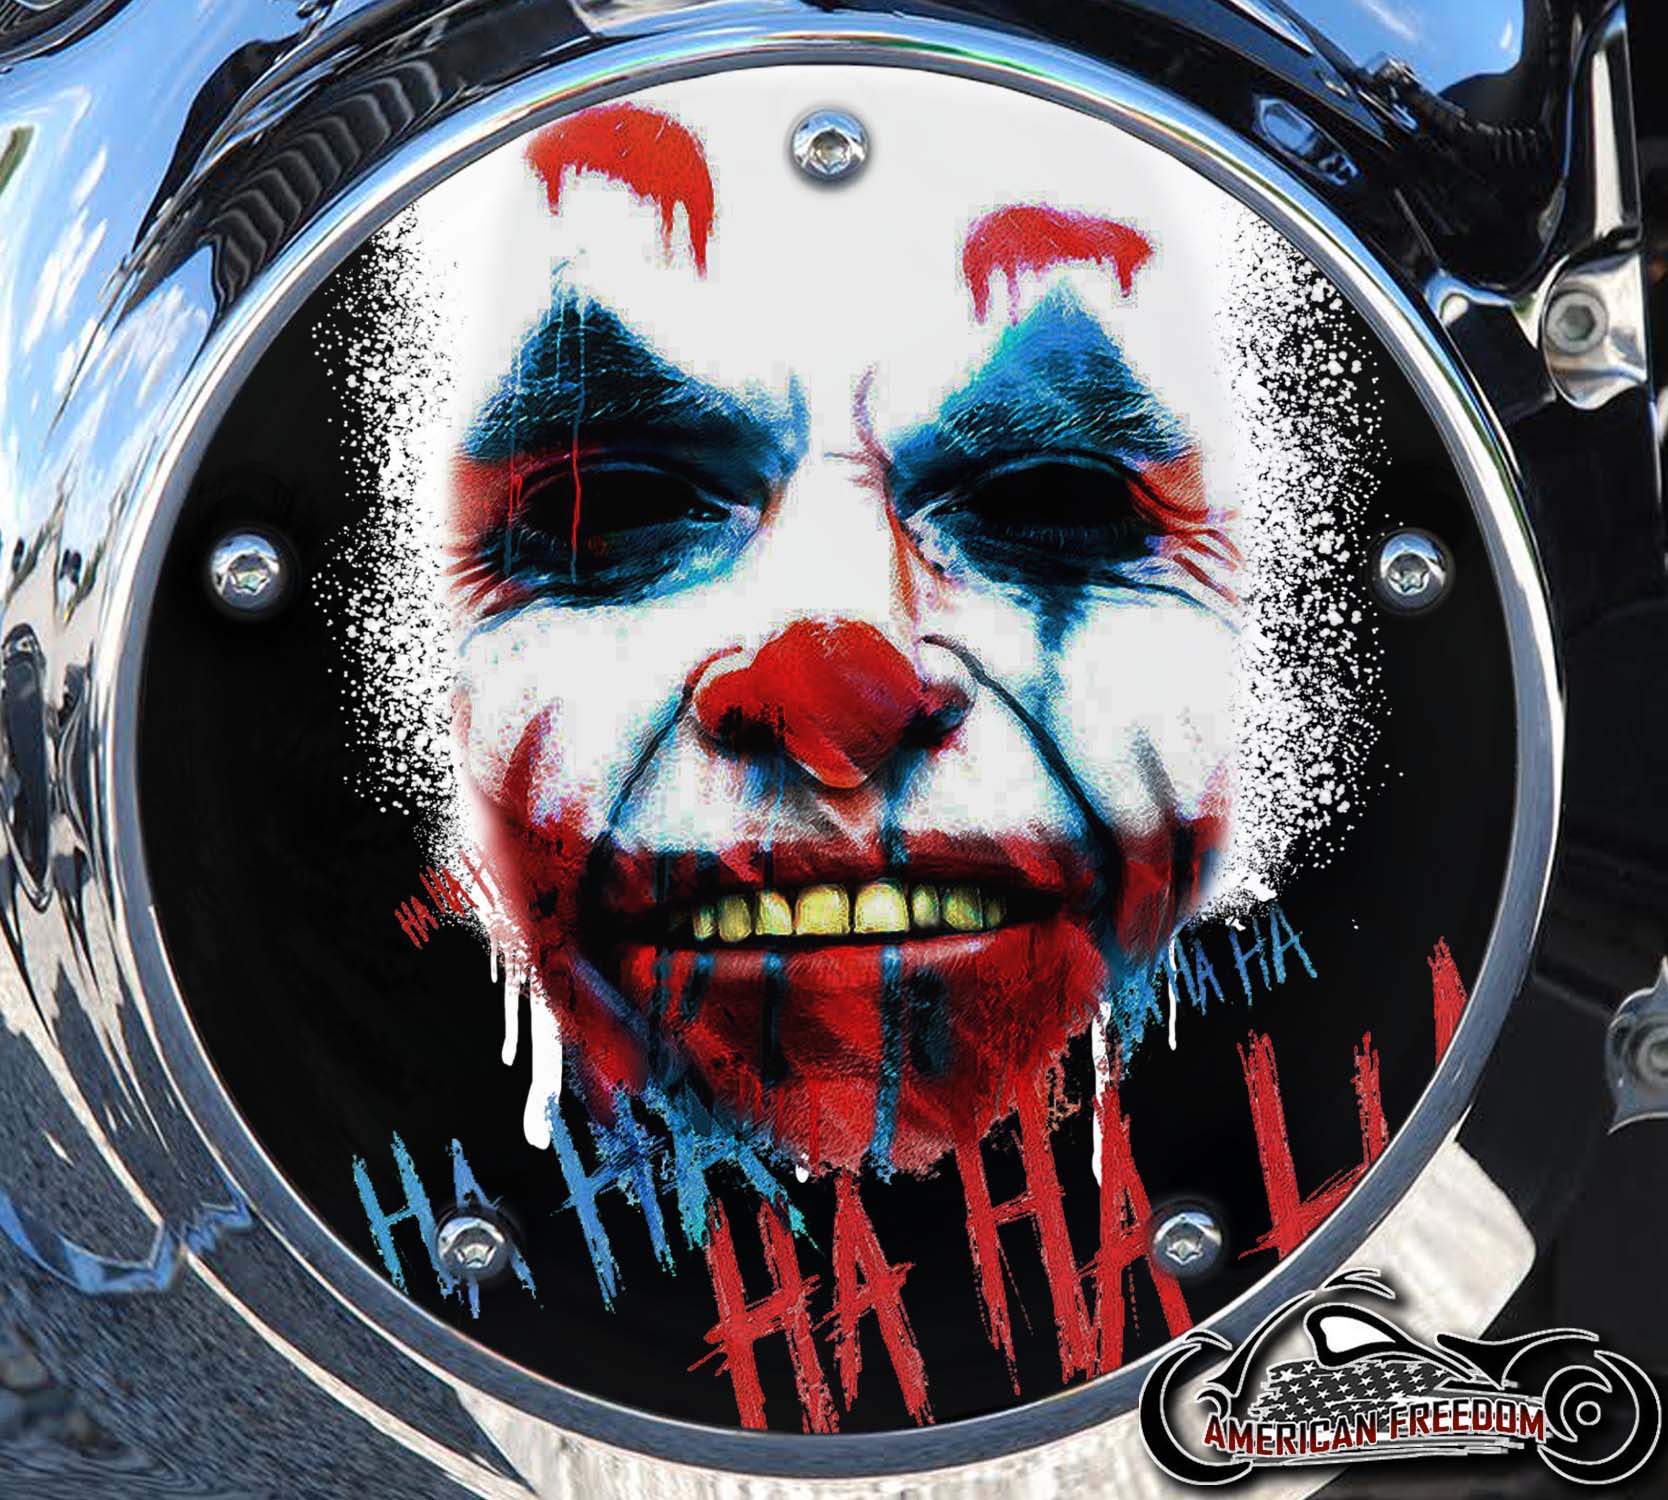 Custom Derby Cover - The Joker HA HA HA